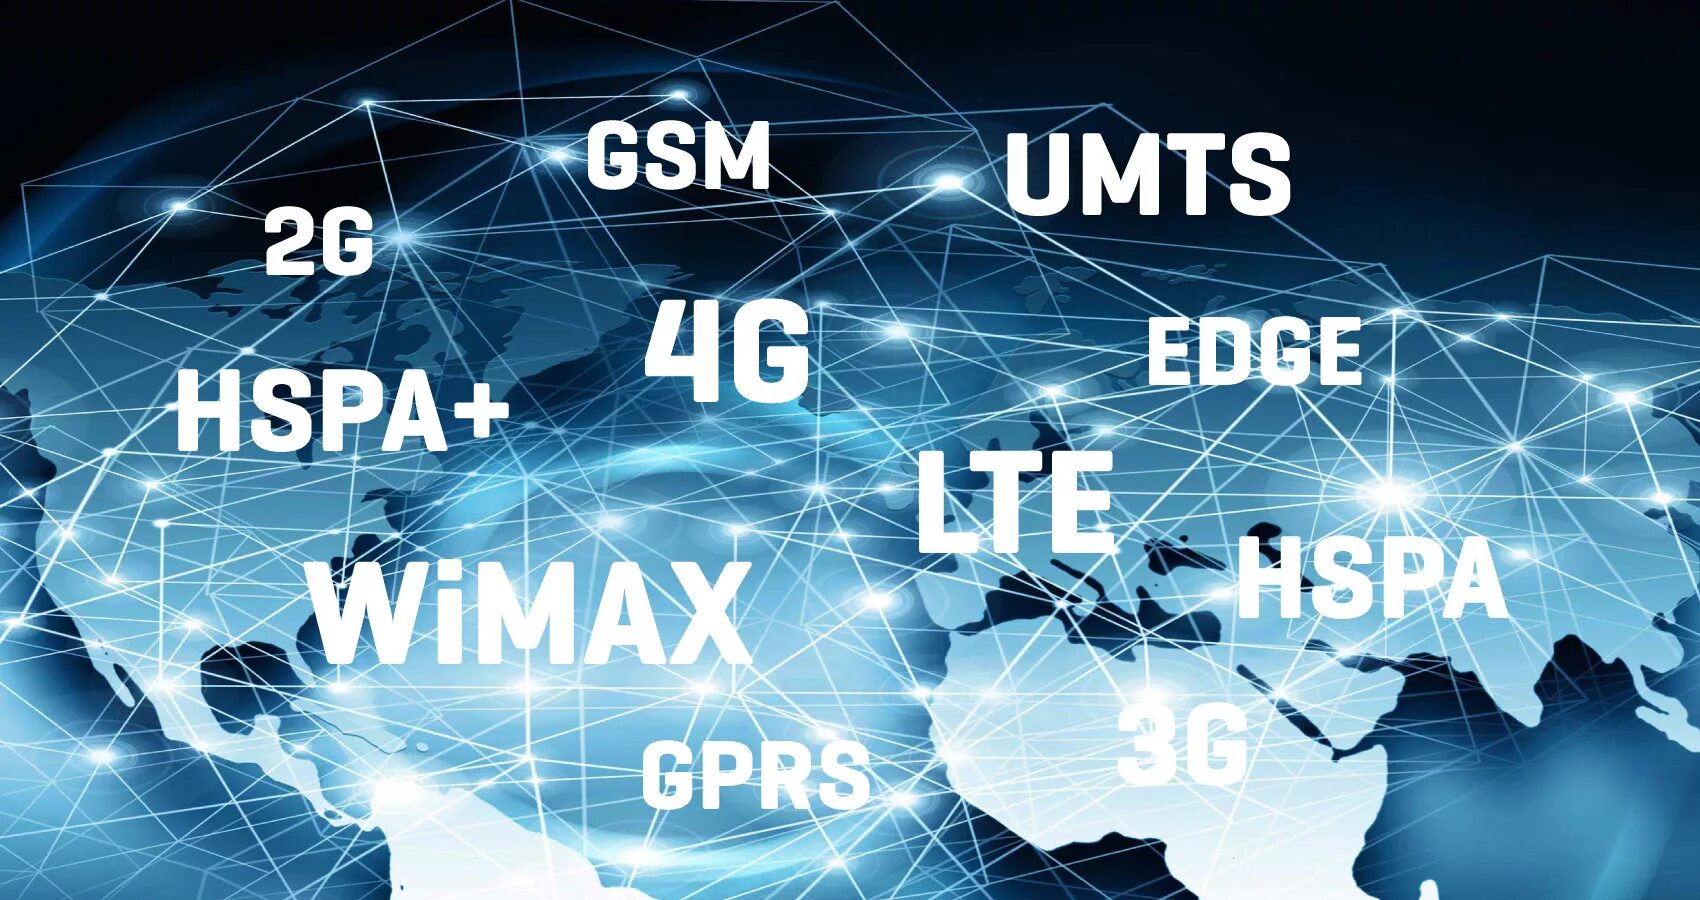 4g какая сеть. GSM /2g, UMTS / 3g, LTE /4g,. 3g 4g 5g. Мобильный интернет (GPRS, 3g, 4g/LTE). Сети сотовой связи 2g 3g 4g.